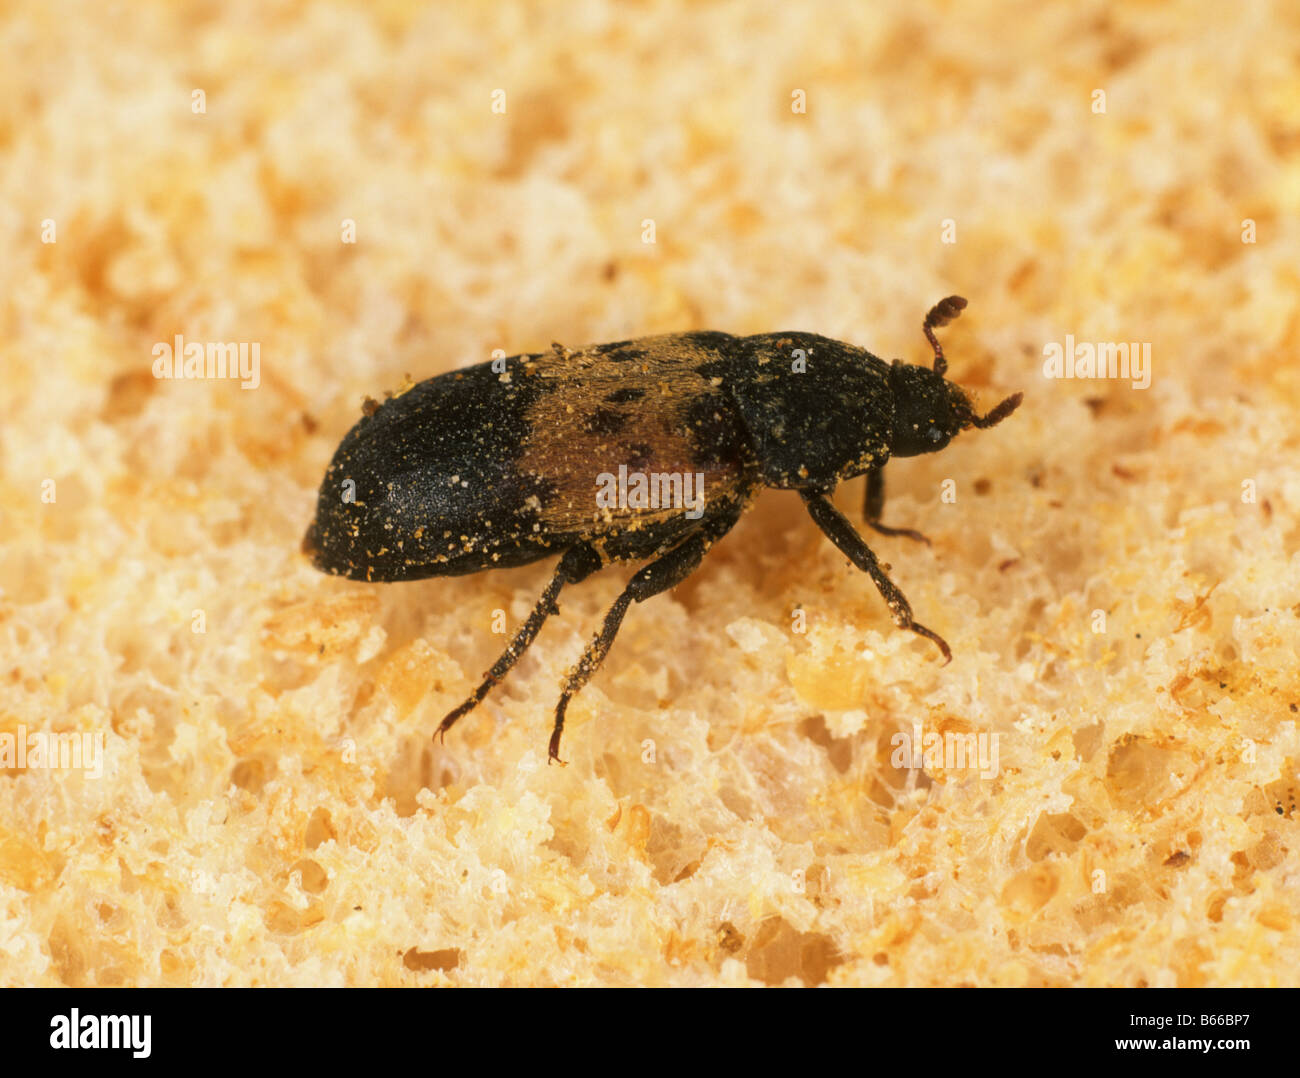 Speisekammer Käfer Dermestes Lardarius speichern Schädling auf Brot Stockfoto